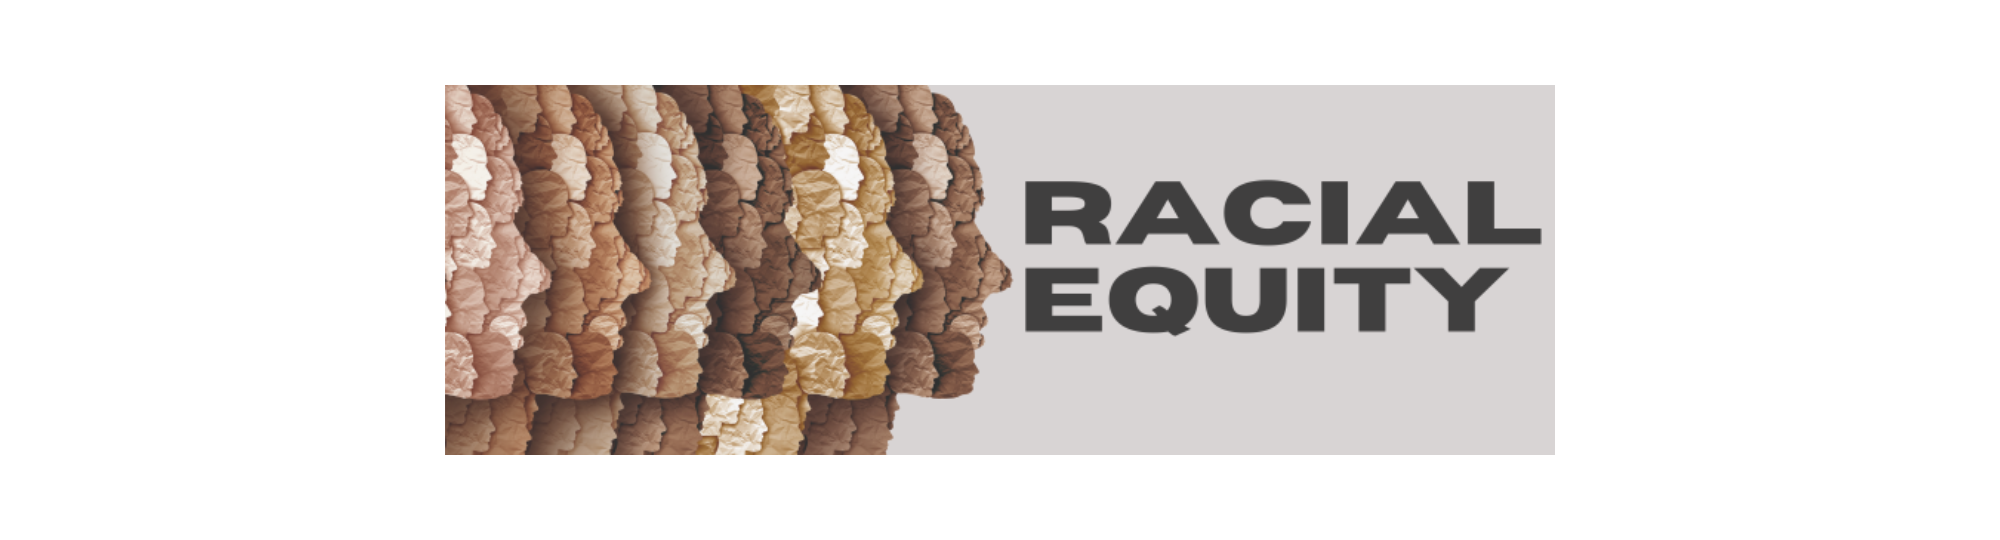 RACIAL EQUITY